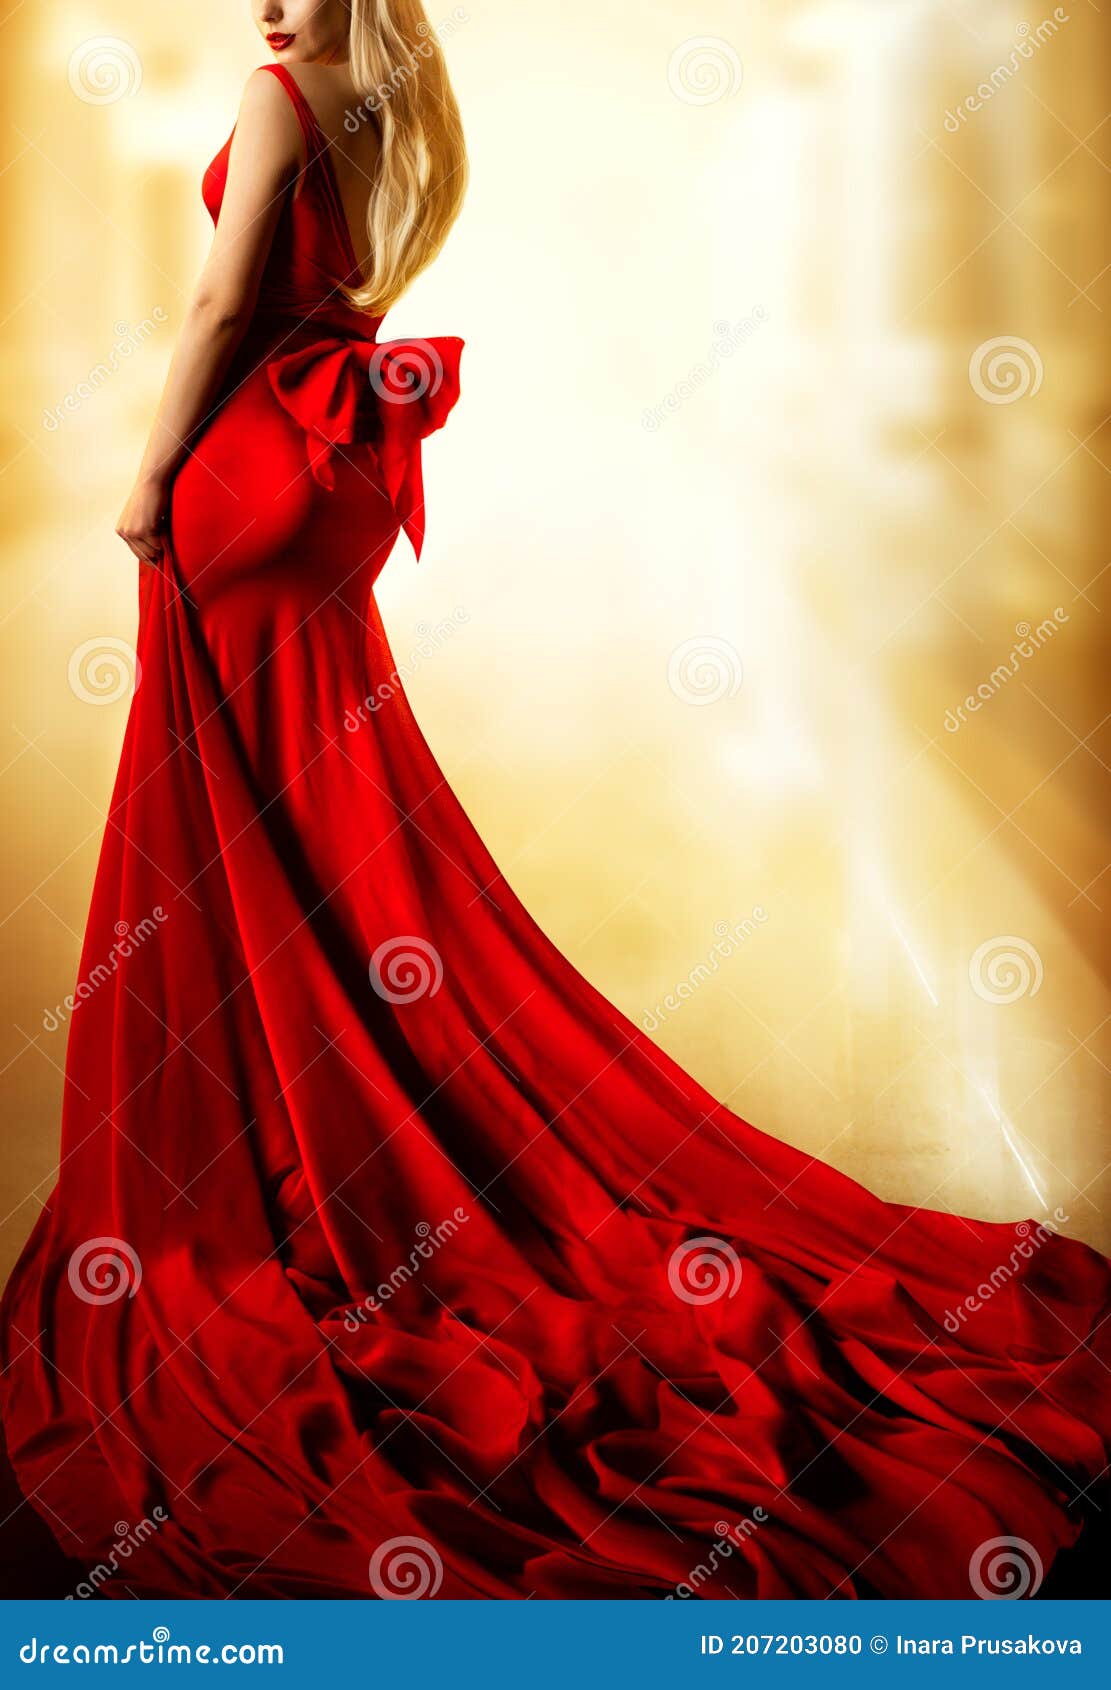 Modelo Rojo Moda Mujer Rubia En La Larga Noche Gown Back View. Fondo De Iluminación Amarillo Foto de archivo - Imagen de encanto, rubio: 207203080